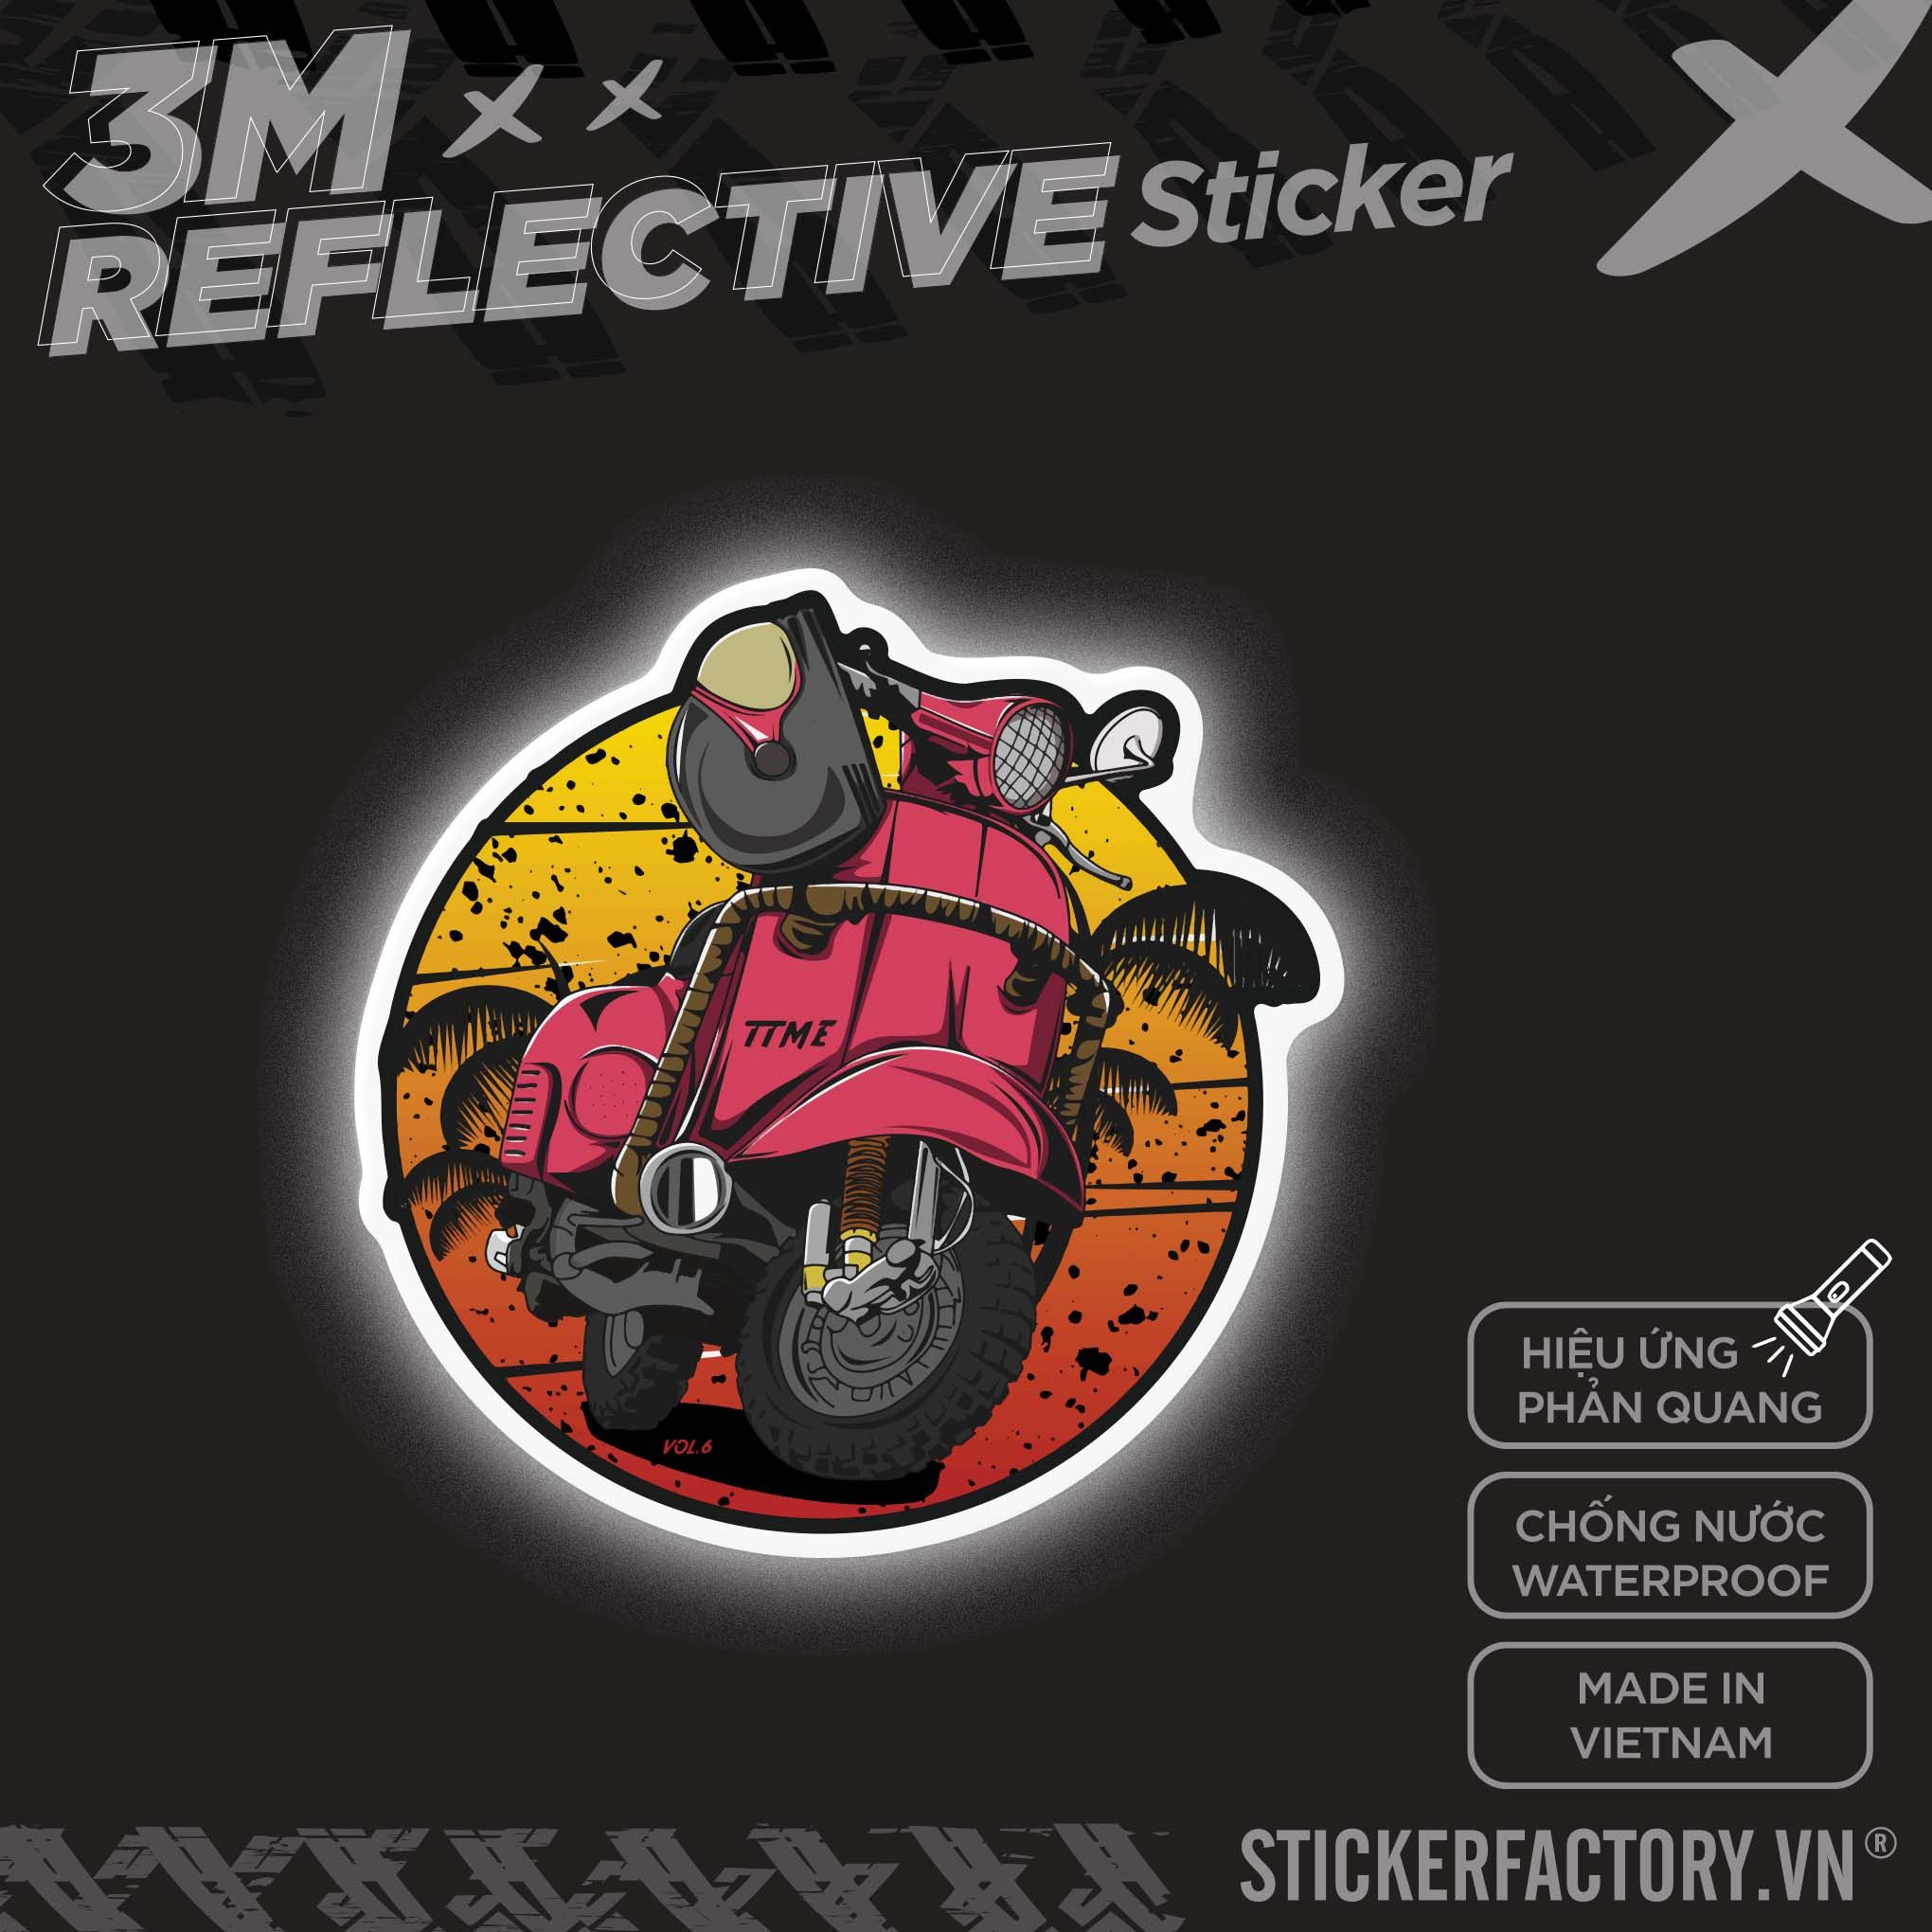 VESPA VINTAGE LOGO 3M - Reflective Sticker Die-cut